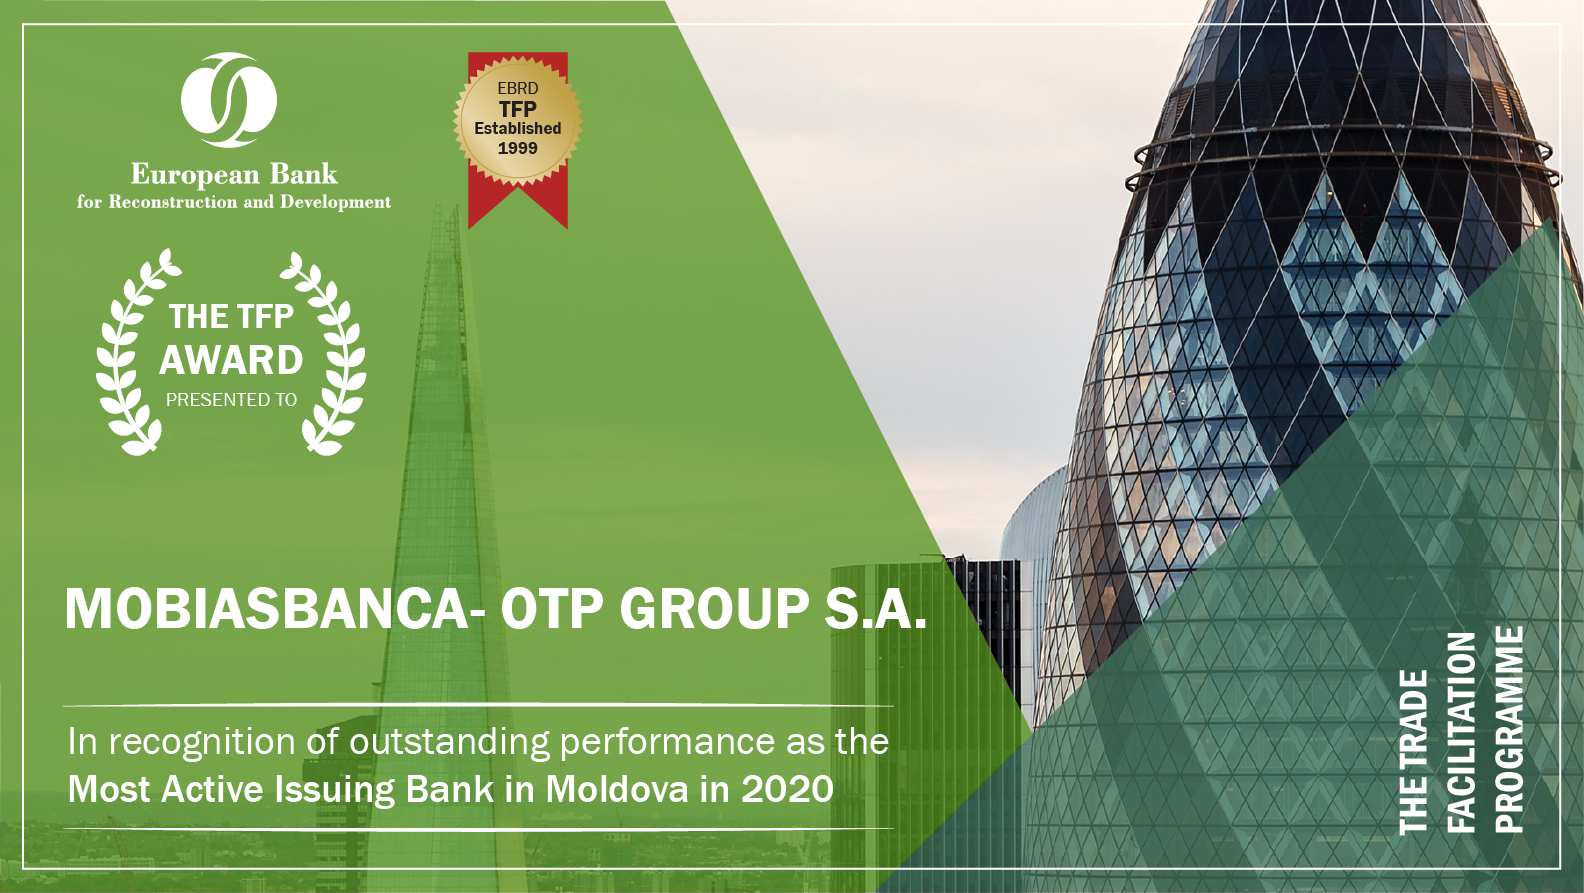 Contribuția Mobiasbanca – OTP Group în facilitarea comerțului, apreciată la nivel internațional